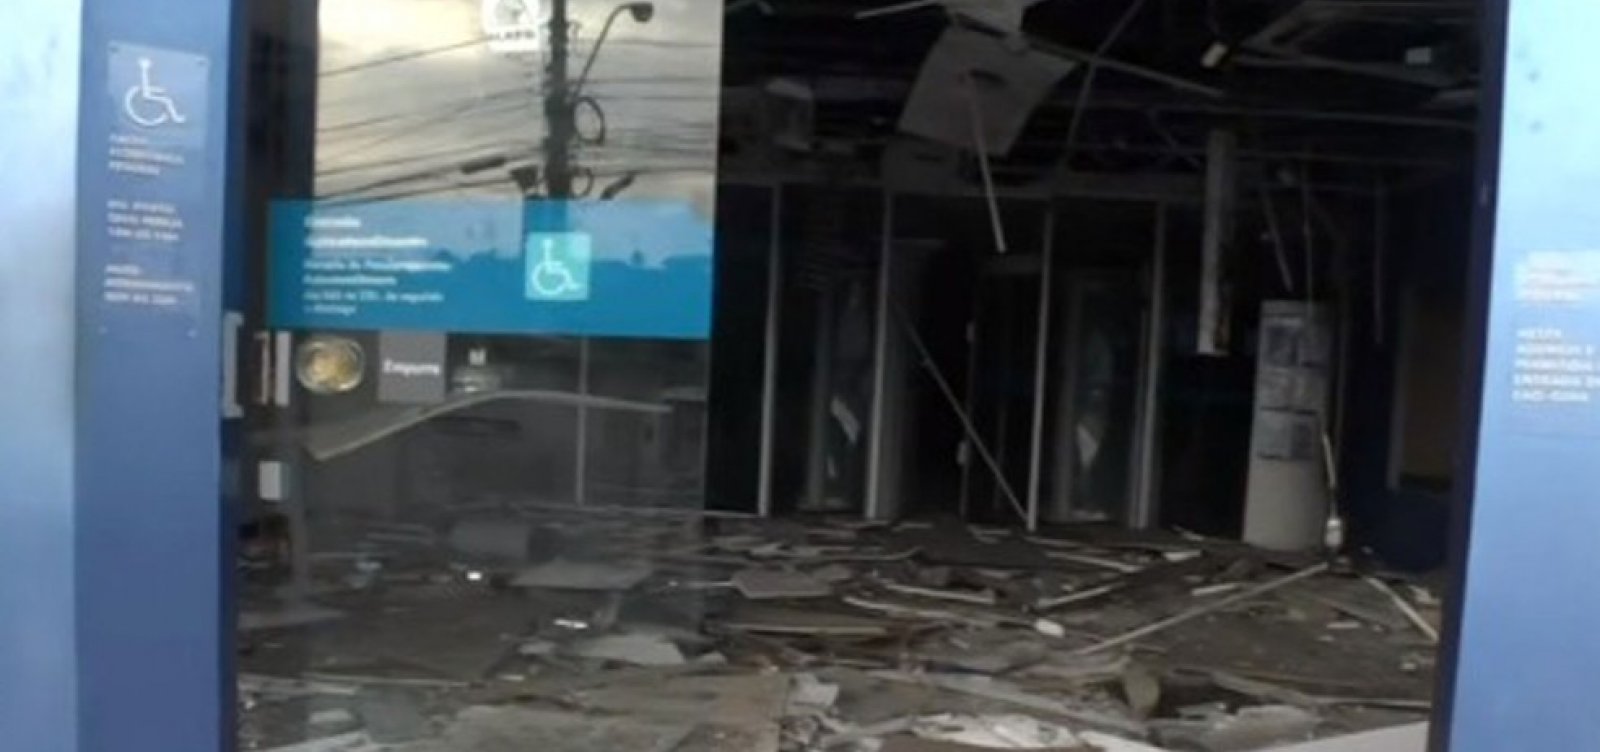 Mais uma agência bancária é explodida em Salvador; este é o terceiro ataque em 20 dias